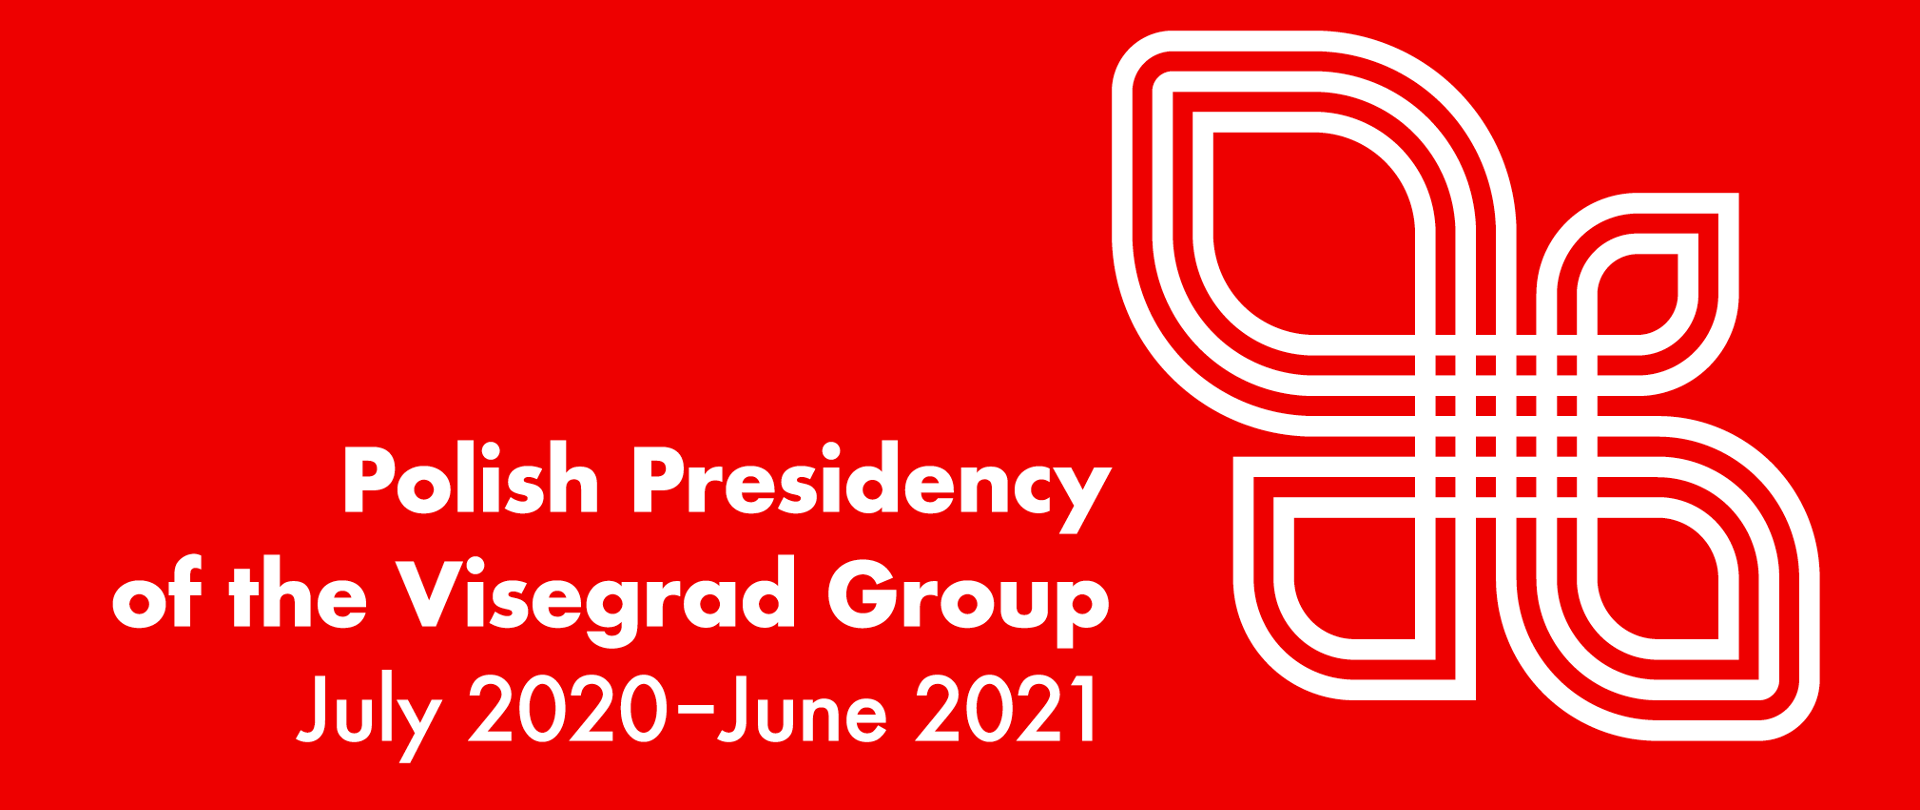 Prezydencja Polski w Grupie Wyszehradzkiej